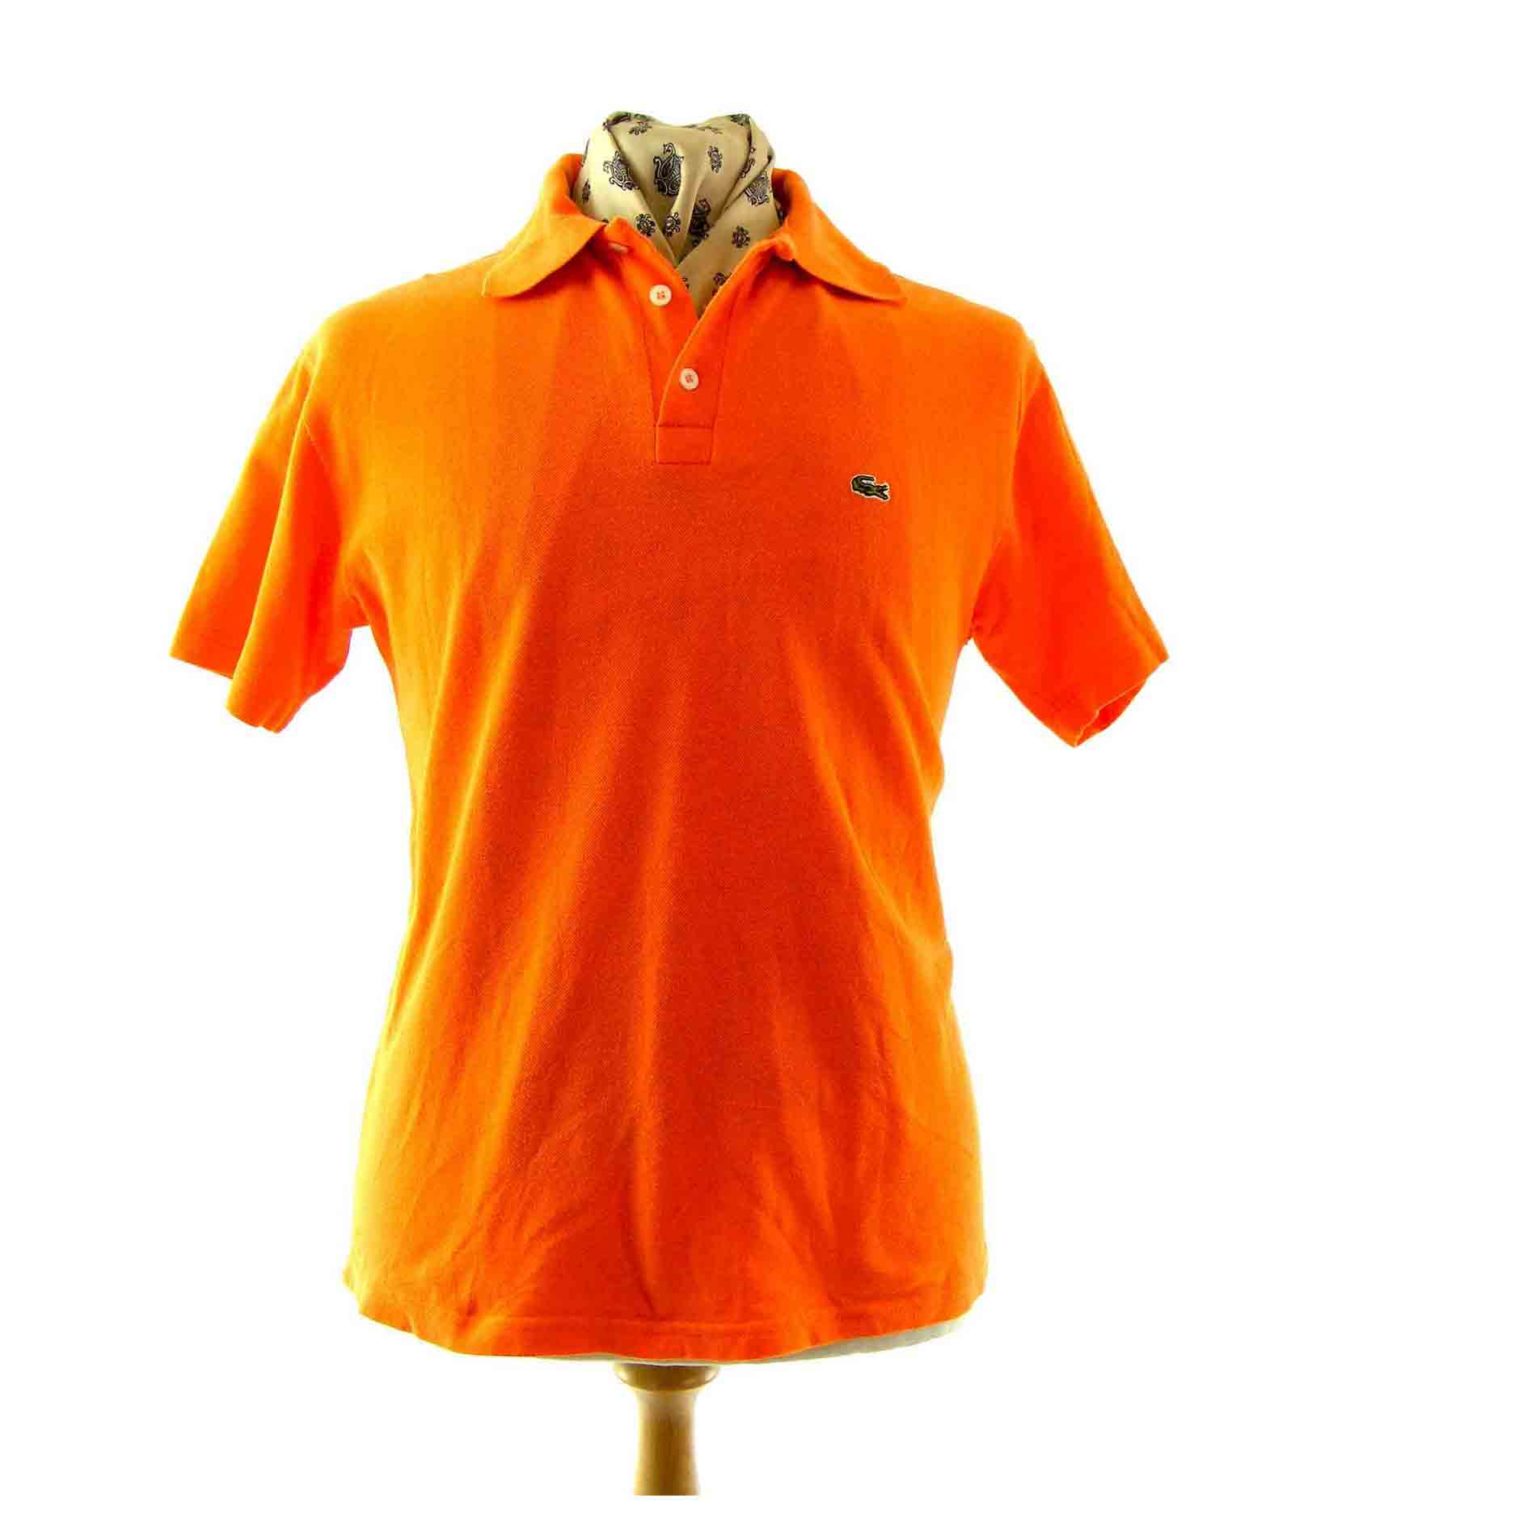 Lacoste orange polo shirt - Blue 17 Vintage Clothing